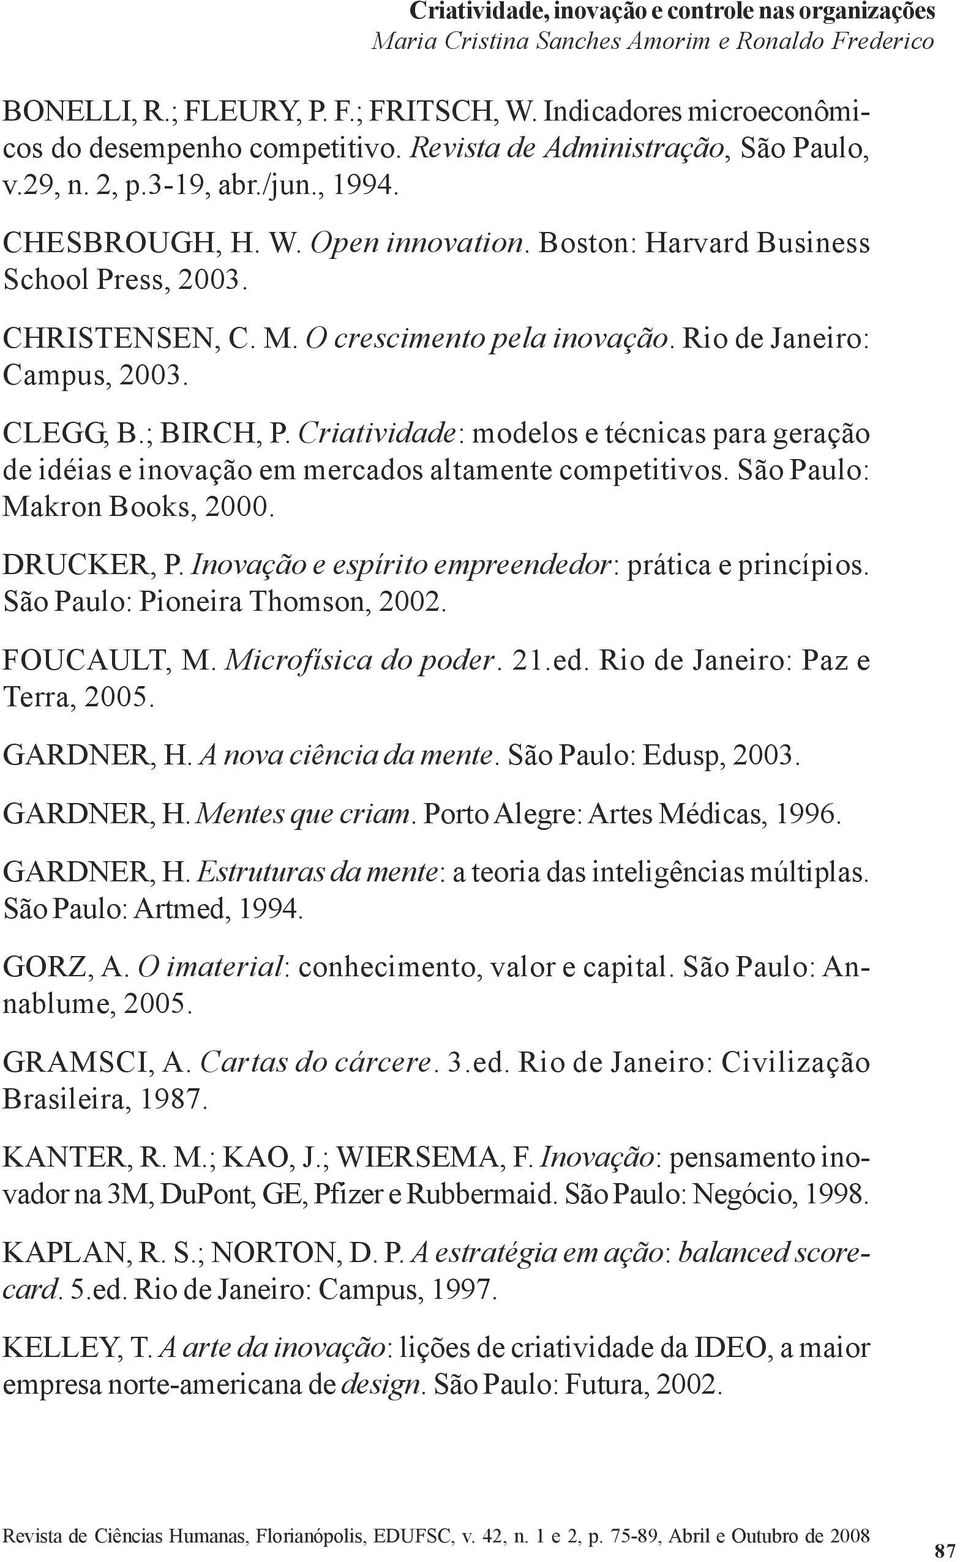 O crescimento pela inovação. Rio de Janeiro: Campus, 2003. CLEGG, B.; BIRCH, P. Criatividade: modelos e técnicas para geração de idéias e inovação em mercados altamente competitivos.